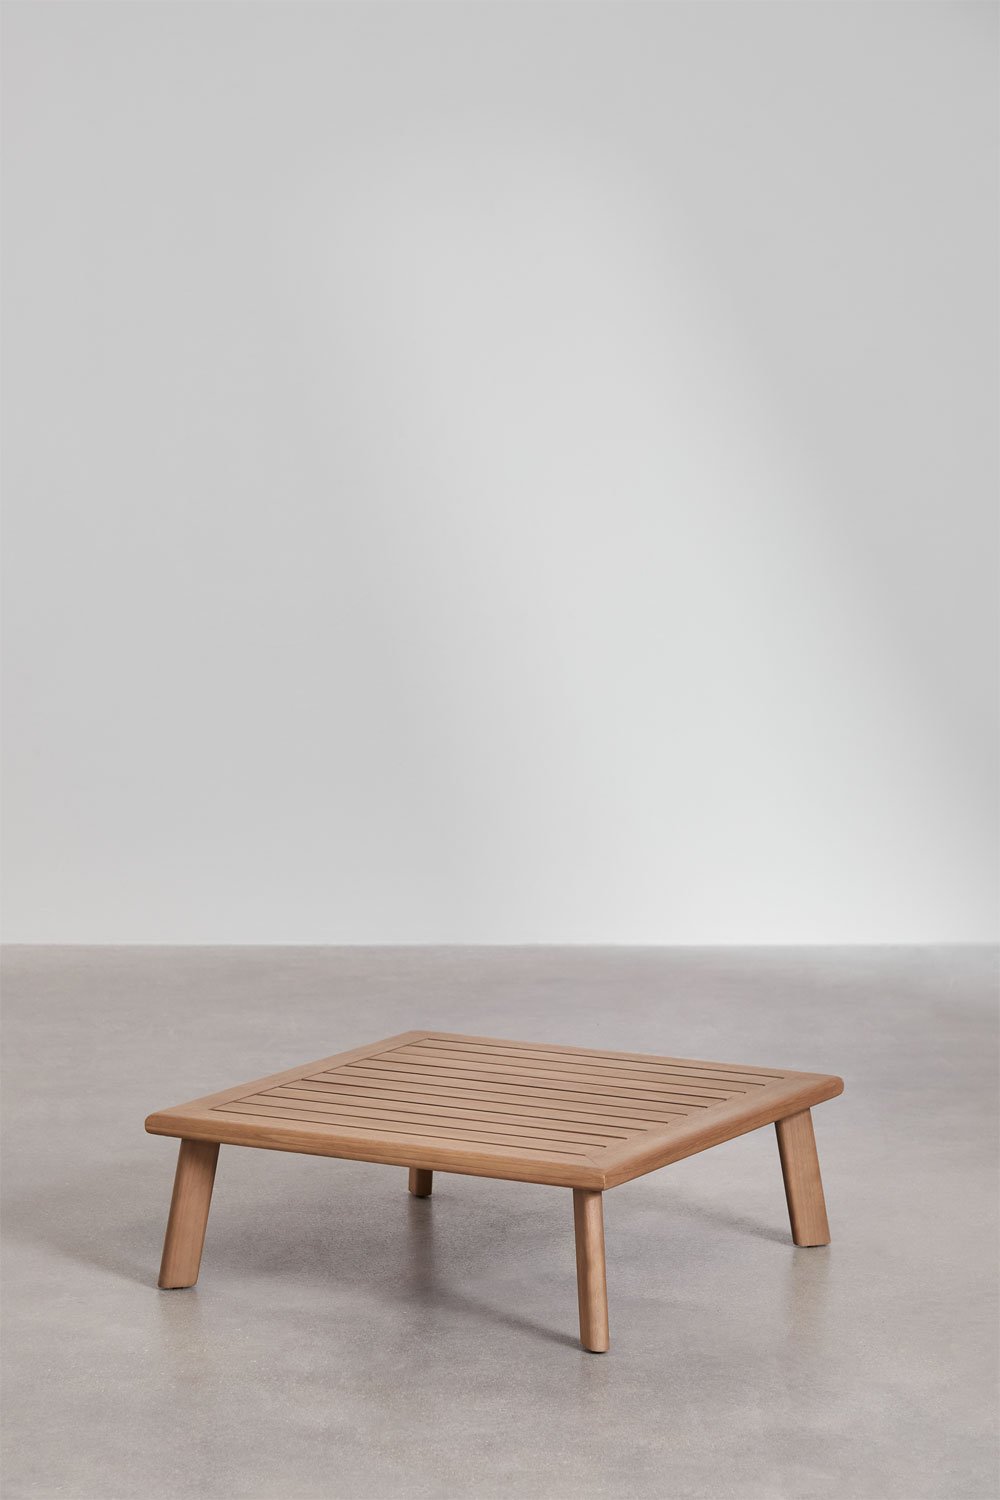 Kwadratowy stolik ogrodowy z drewna eukaliptusowego (78x78 cm) Jaminsk, obrazek w galerii 1